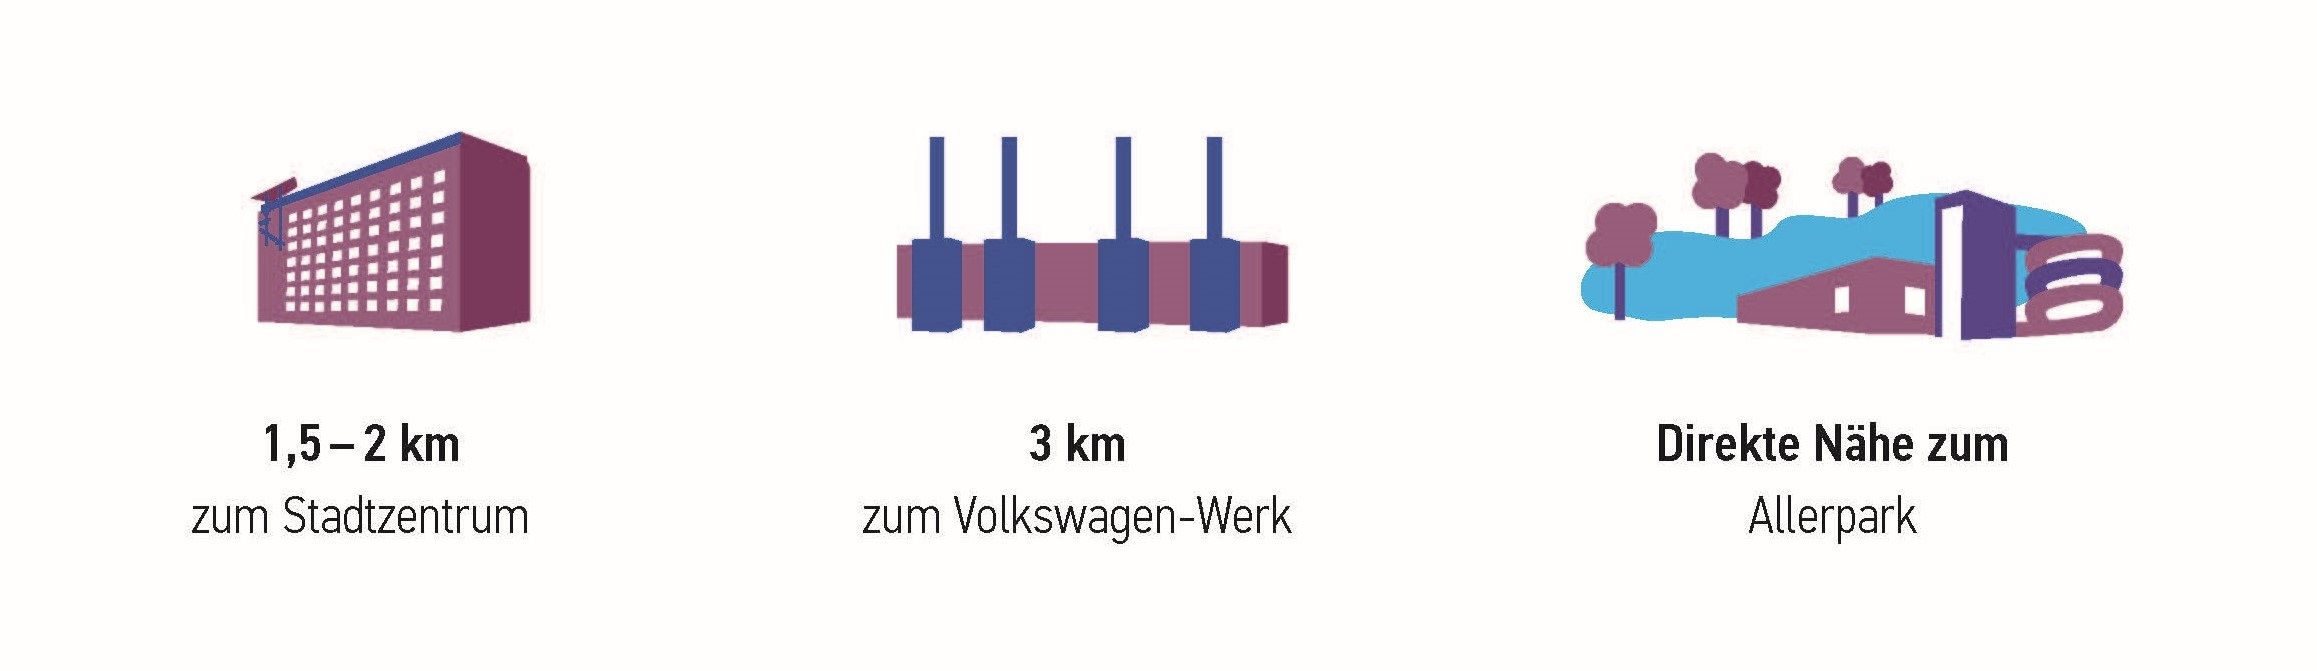 Grafik mit den Angaben: "1,5 bis 2 km zum Stadtzentrum", "3 km zum Volkswagen-Werk", und "Direkte Nähe zum Allerpark"